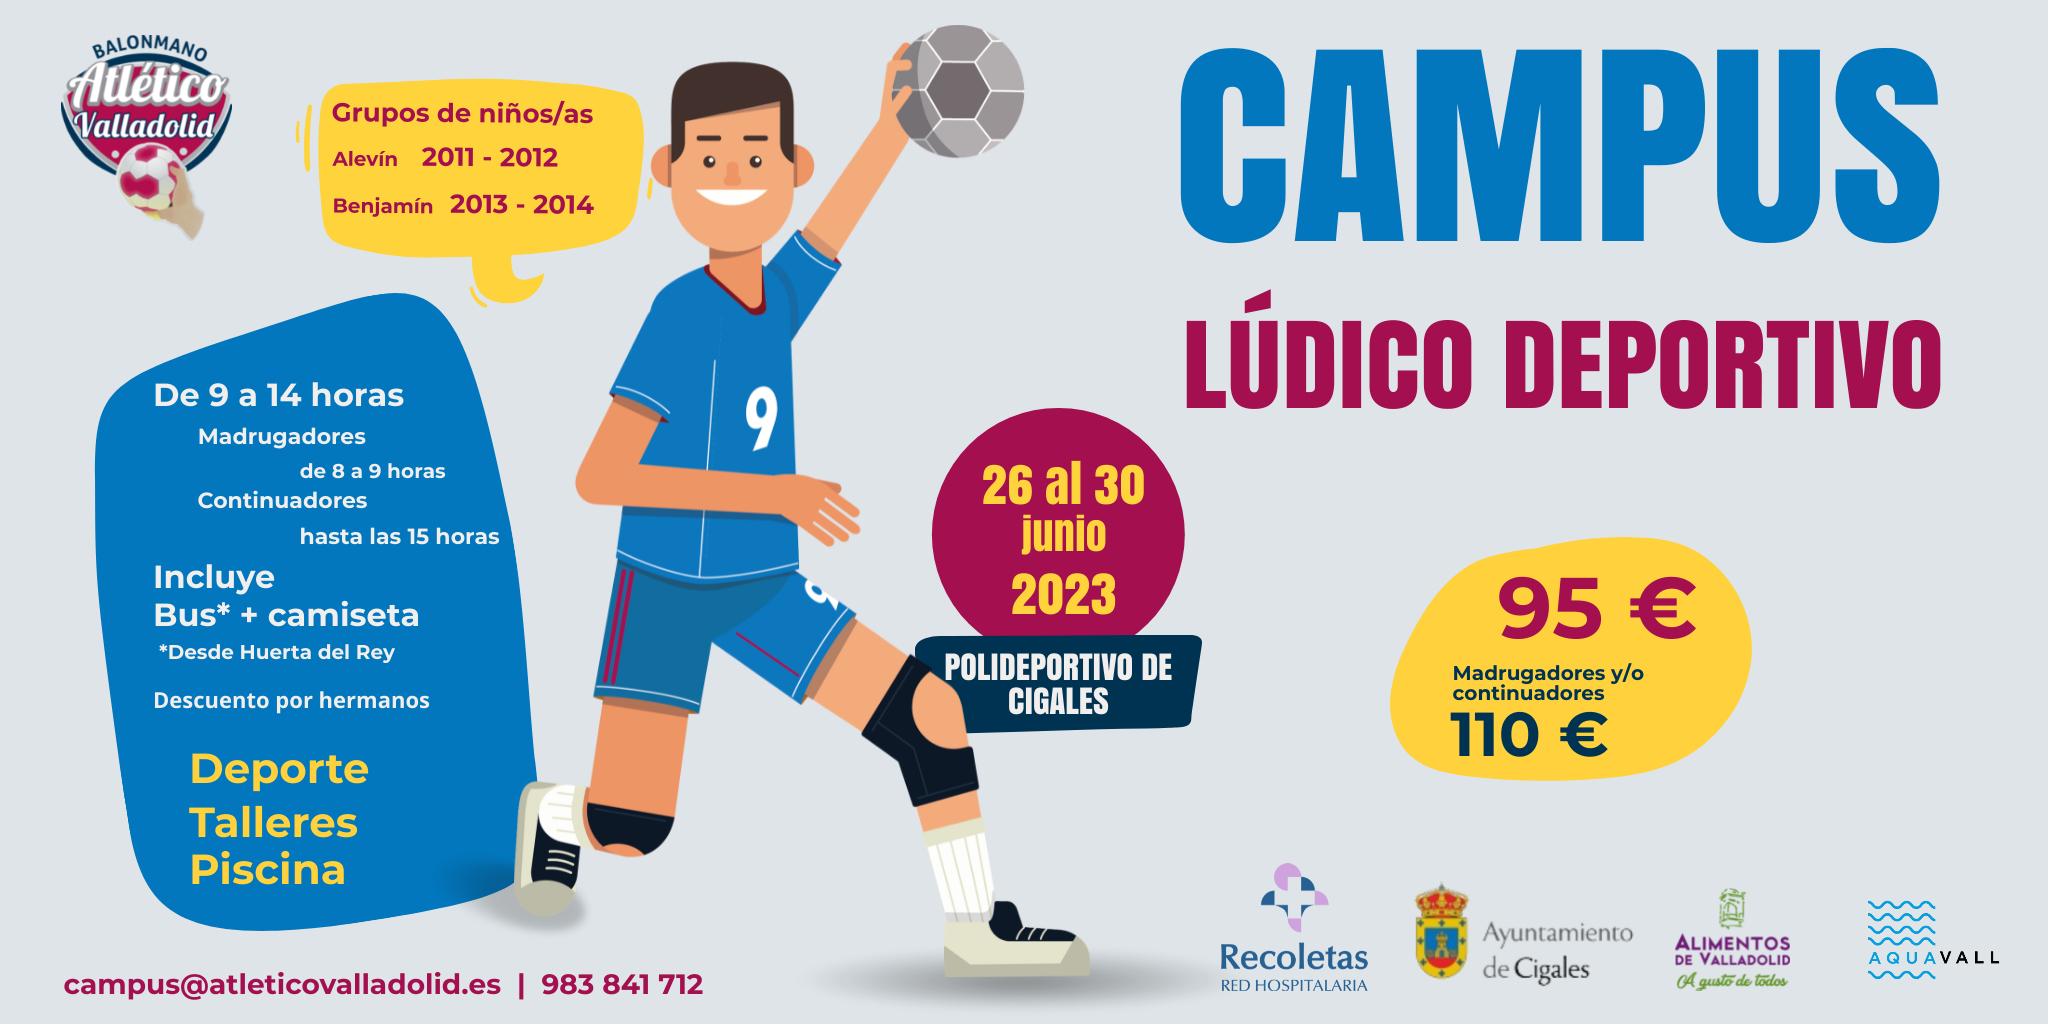 El Recoletas organiza un Campus Lúdico Deportivo para finales de junio